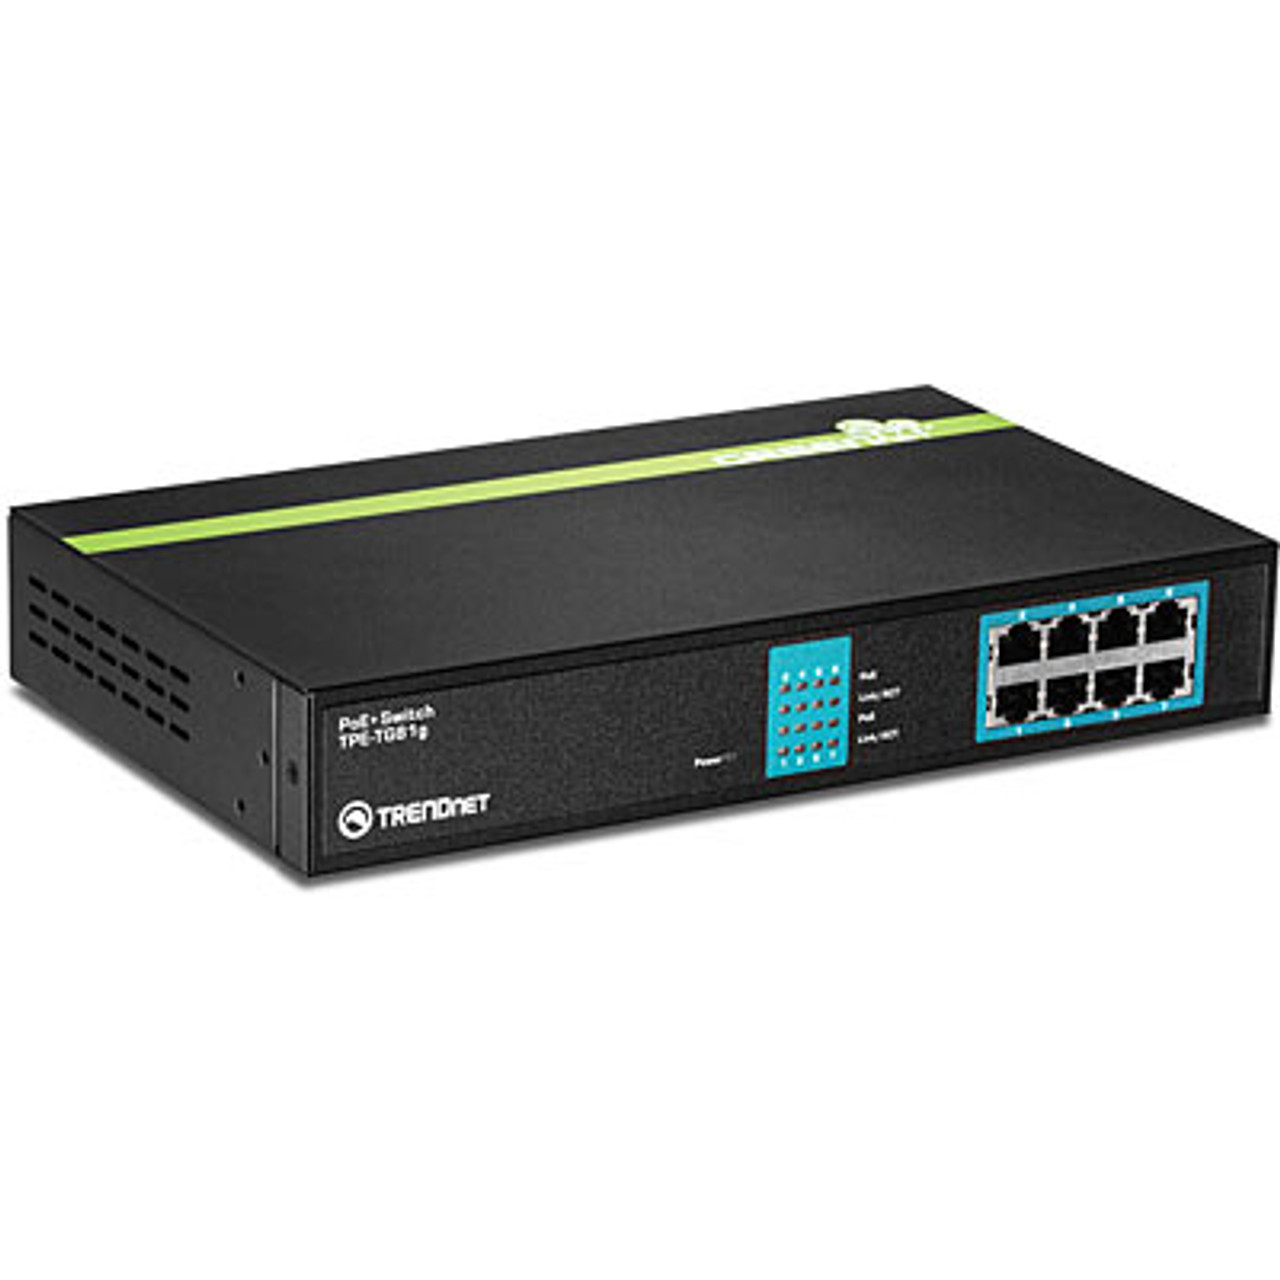 Trendnet TPE-TG81g Unmanaged network switch Gigabit Ethernet (10/100/1000) Power over Ethernet (PoE)